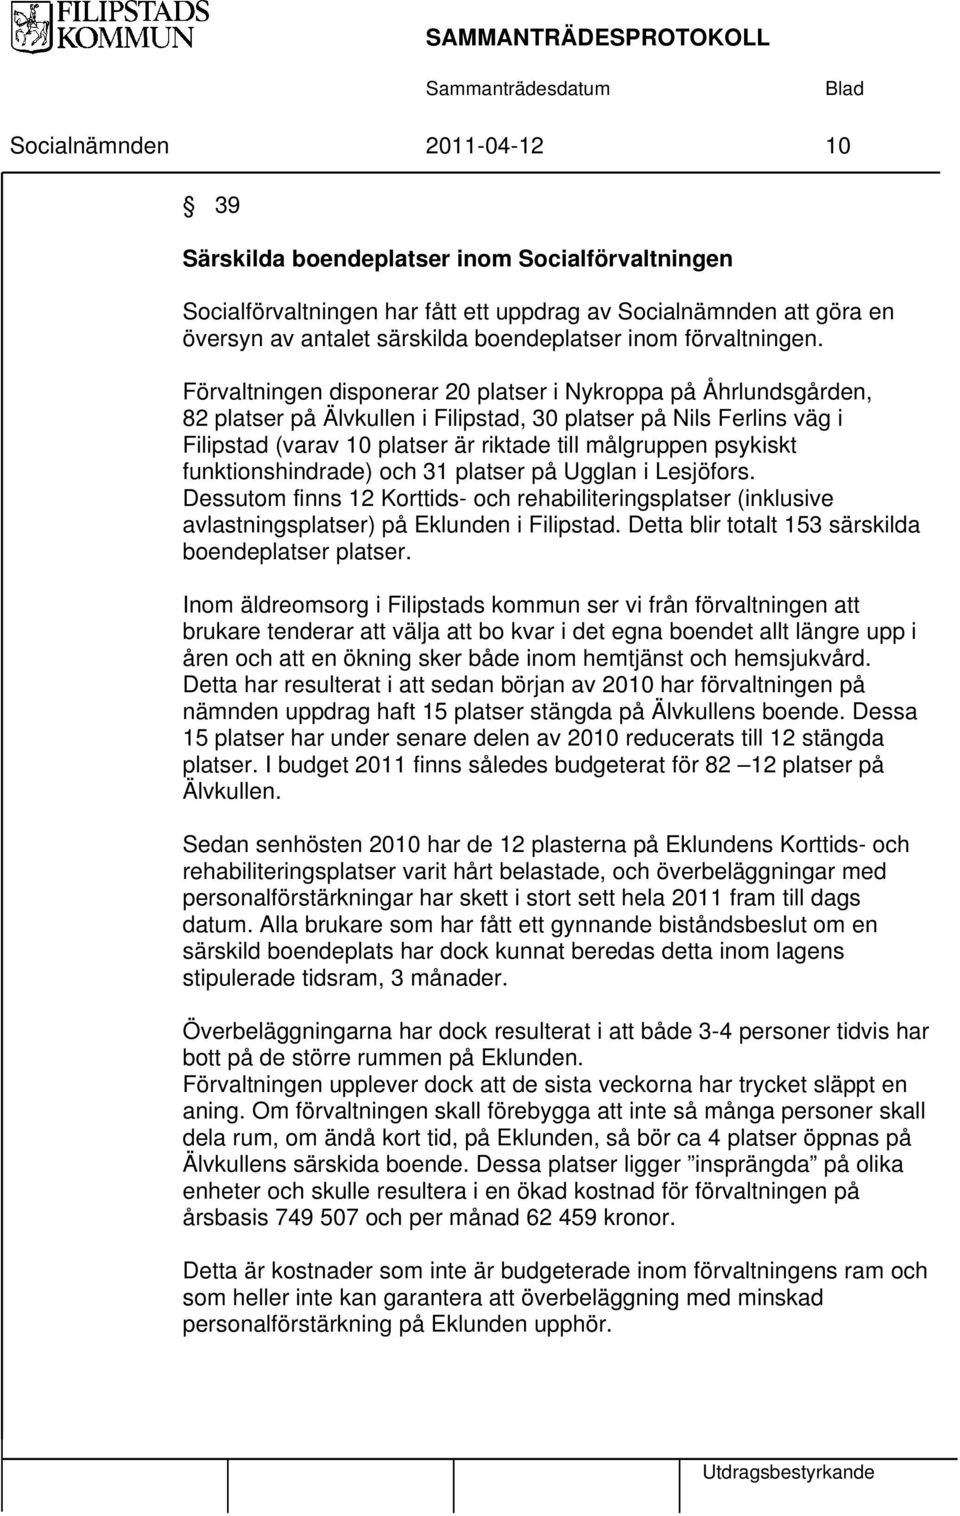 Förvaltningen disponerar 20 platser i Nykroppa på Åhrlundsgården, 82 platser på Älvkullen i Filipstad, 30 platser på Nils Ferlins väg i Filipstad (varav 10 platser är riktade till målgruppen psykiskt